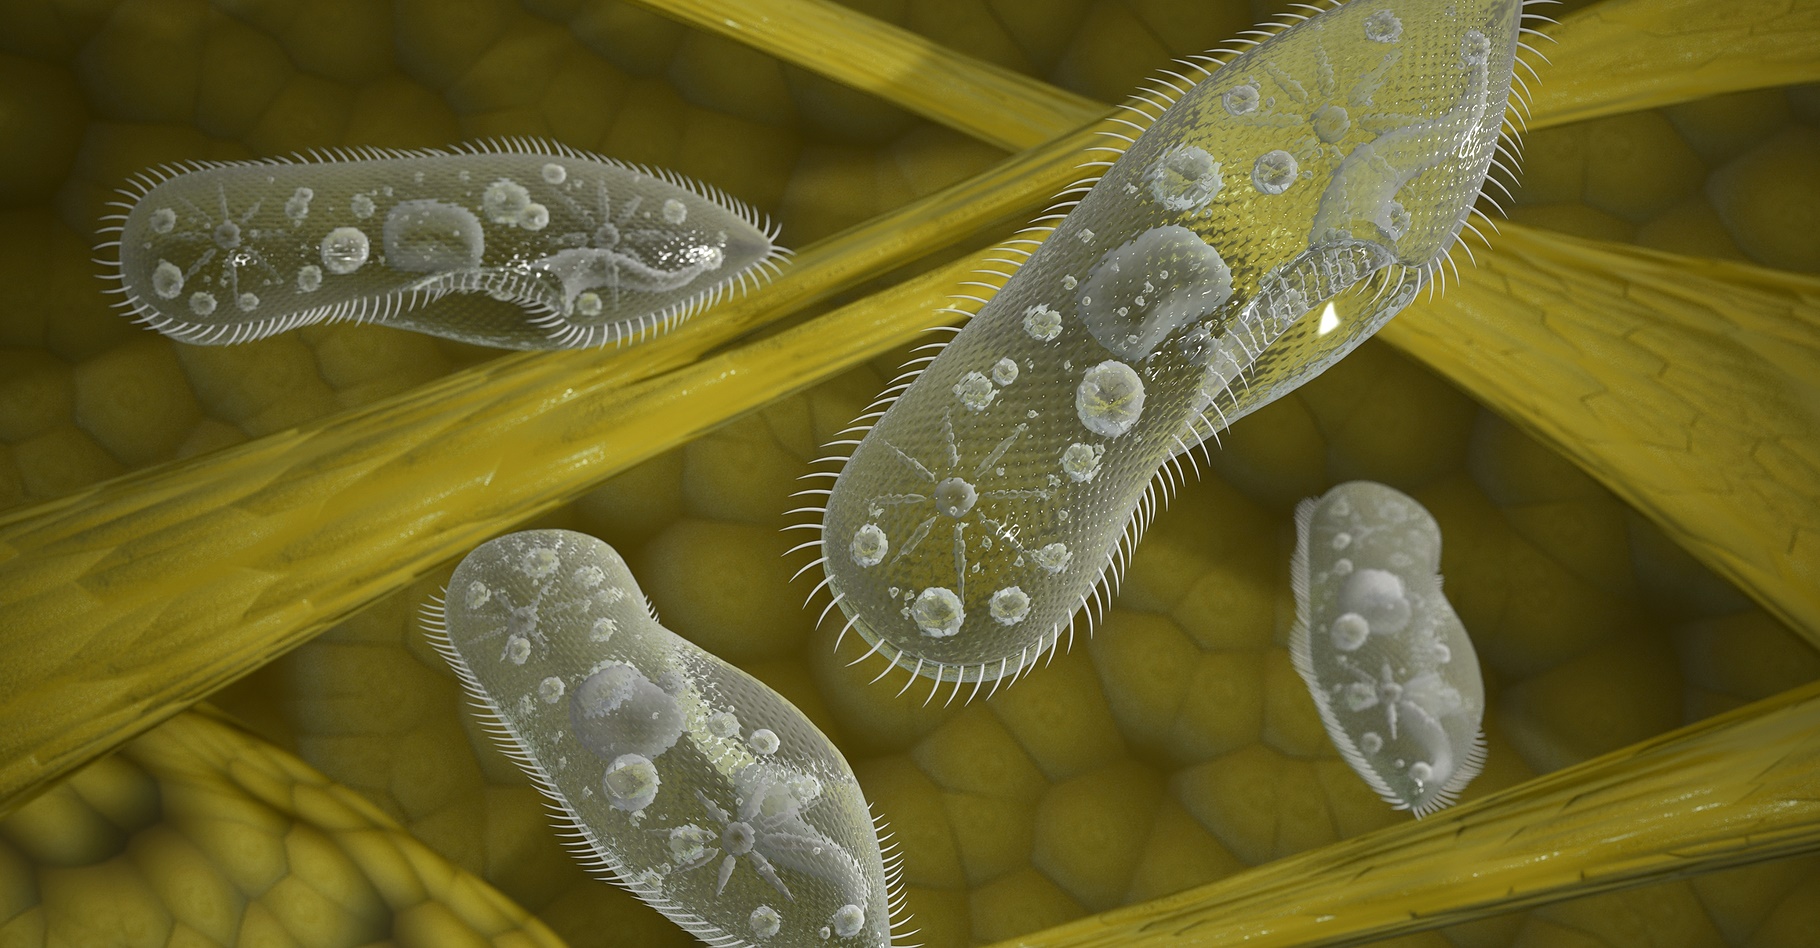 La paramécie est un protozoaire cilié qui a servi de modèle pour fabriquer un&nbsp;nouveau microrobot. © Wire_man, Shutterstock